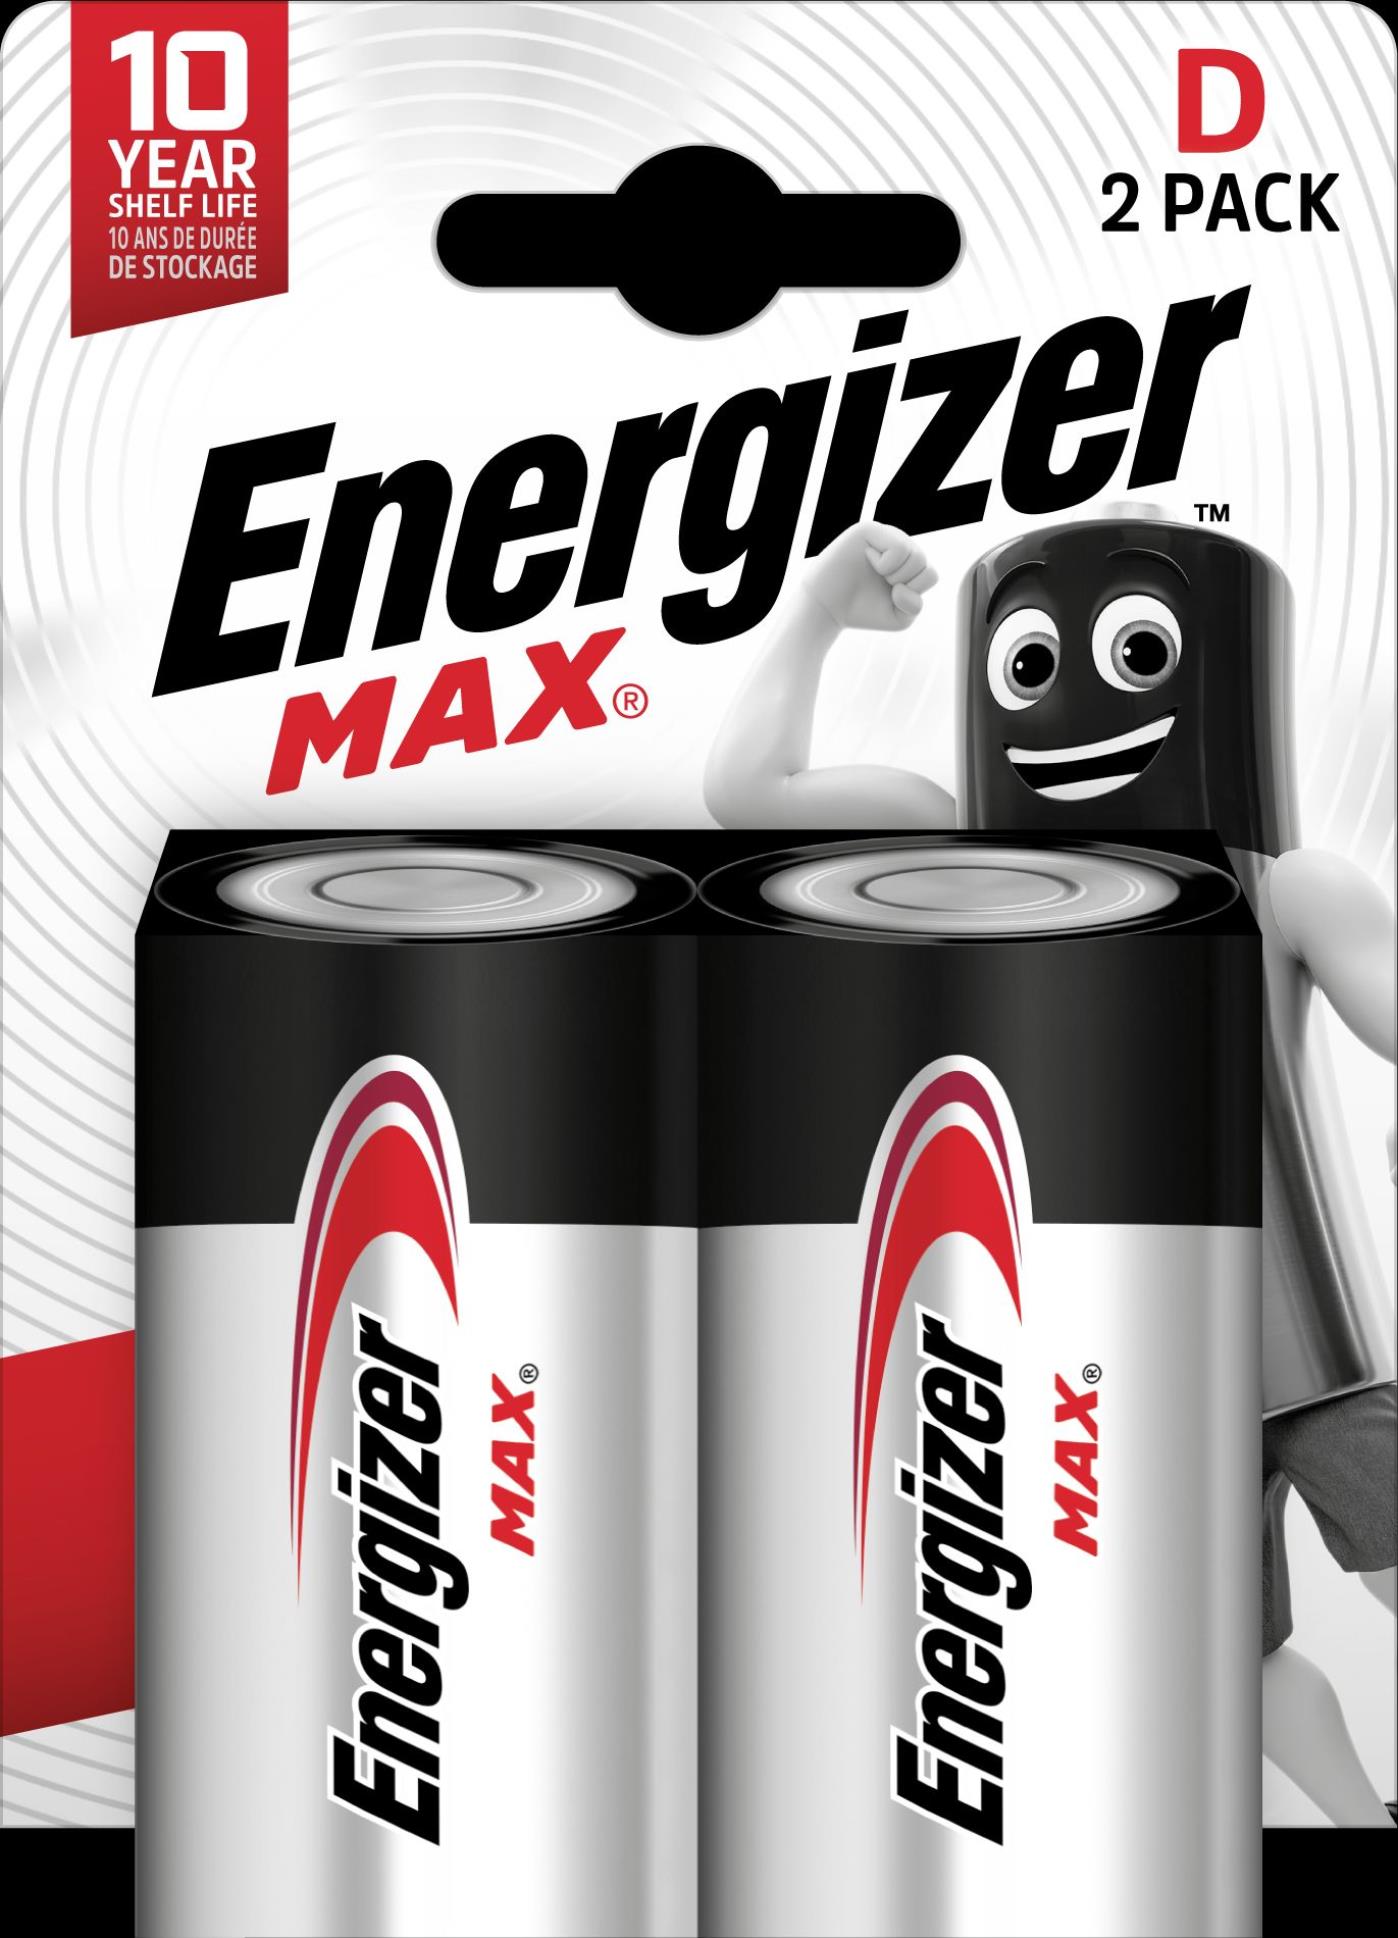 Alkalické baterie Energizer Max - 1,5 V, typ D, 2 ks